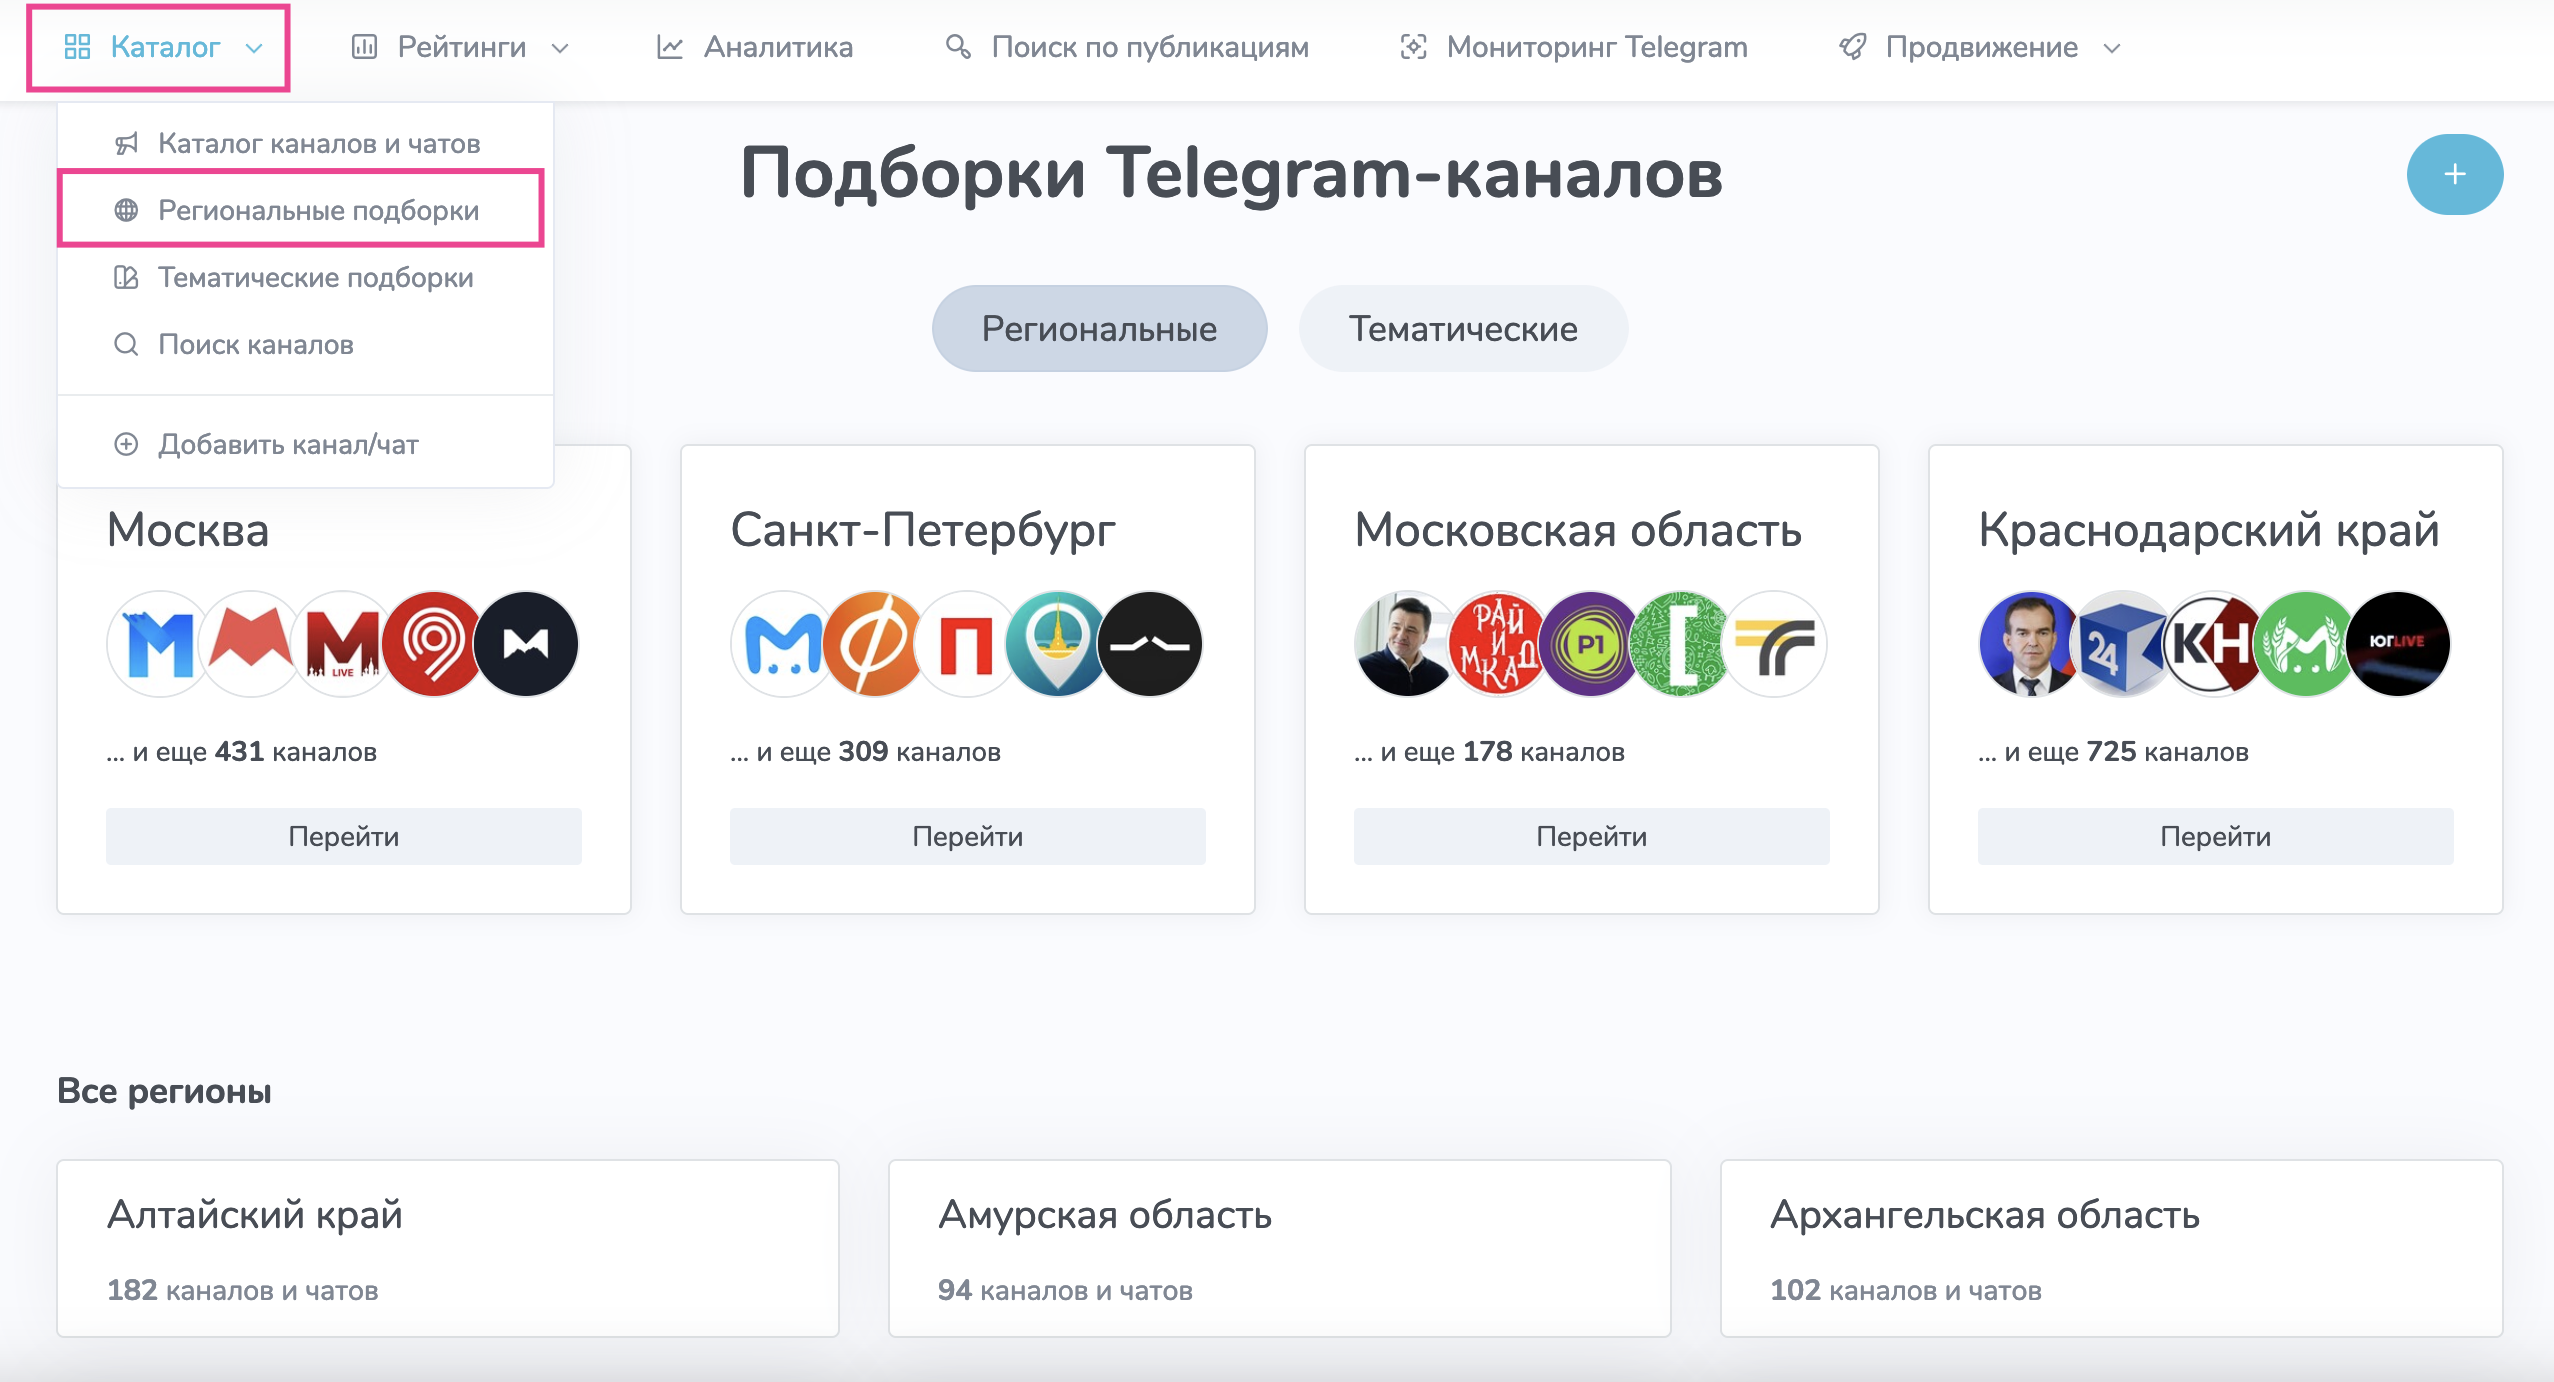 На TGStat.ru есть подборки каналов под каждый регион РФ. Подборки дополняются новыми каналами, как сотрудниками TGStat, так и активными пользователями сервиса.